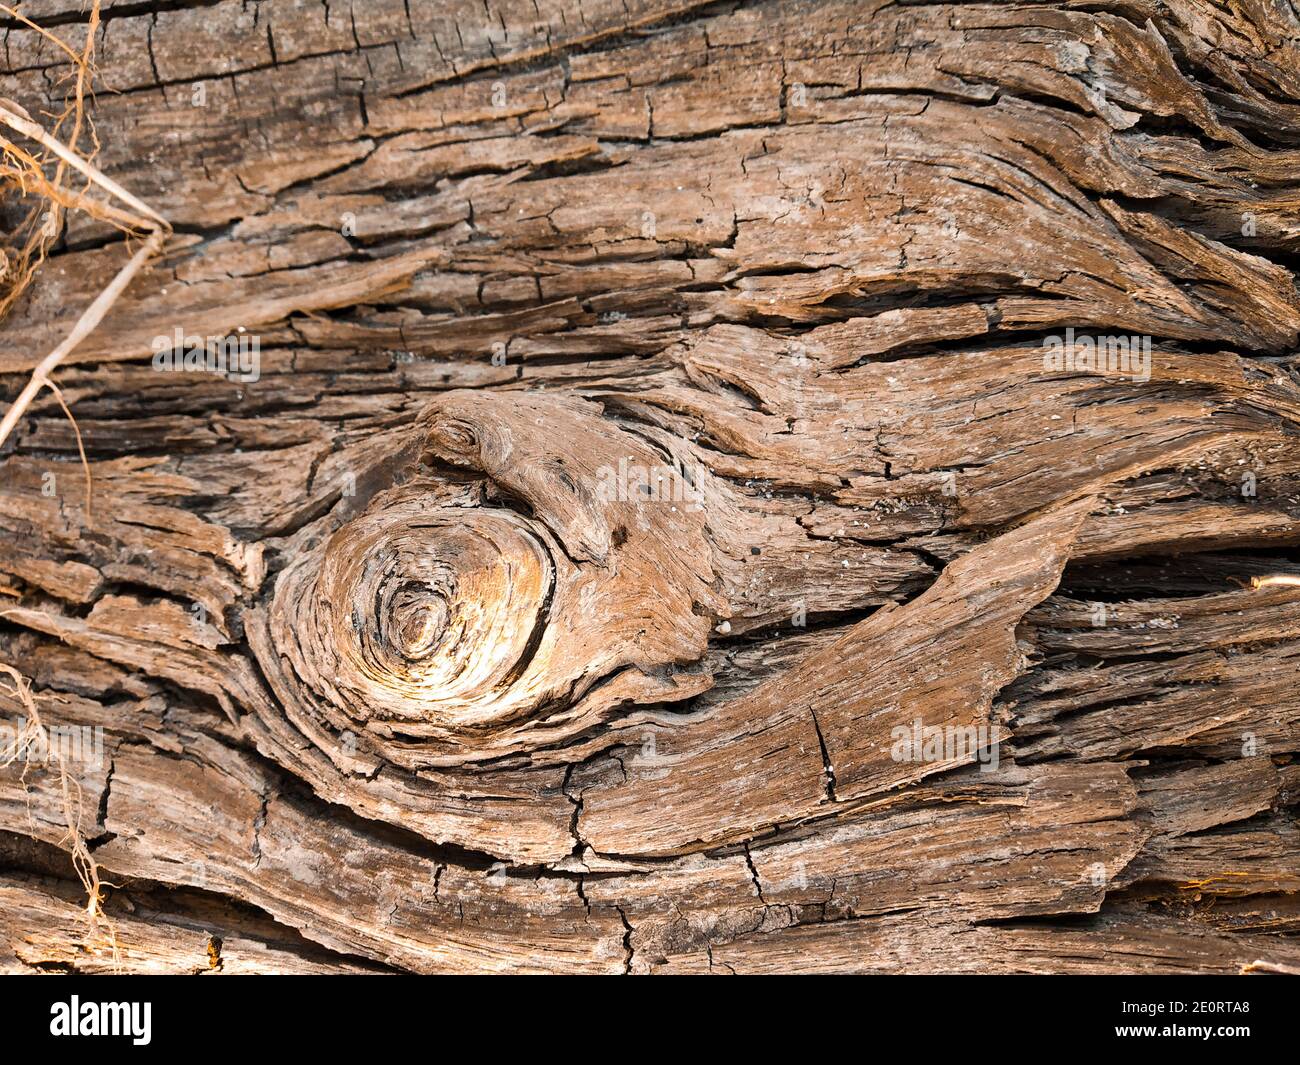 Bạn yêu thích một không gian ấm cúng và trầm lắng với nét độc đáo? Hãy xem hình ảnh về texture gỗ cũ để khám phá sự đẹp của những vân gỗ tự nhiên và sự tinh tế trong từng mẫu hoa văn khắc trên bề mặt gỗ.